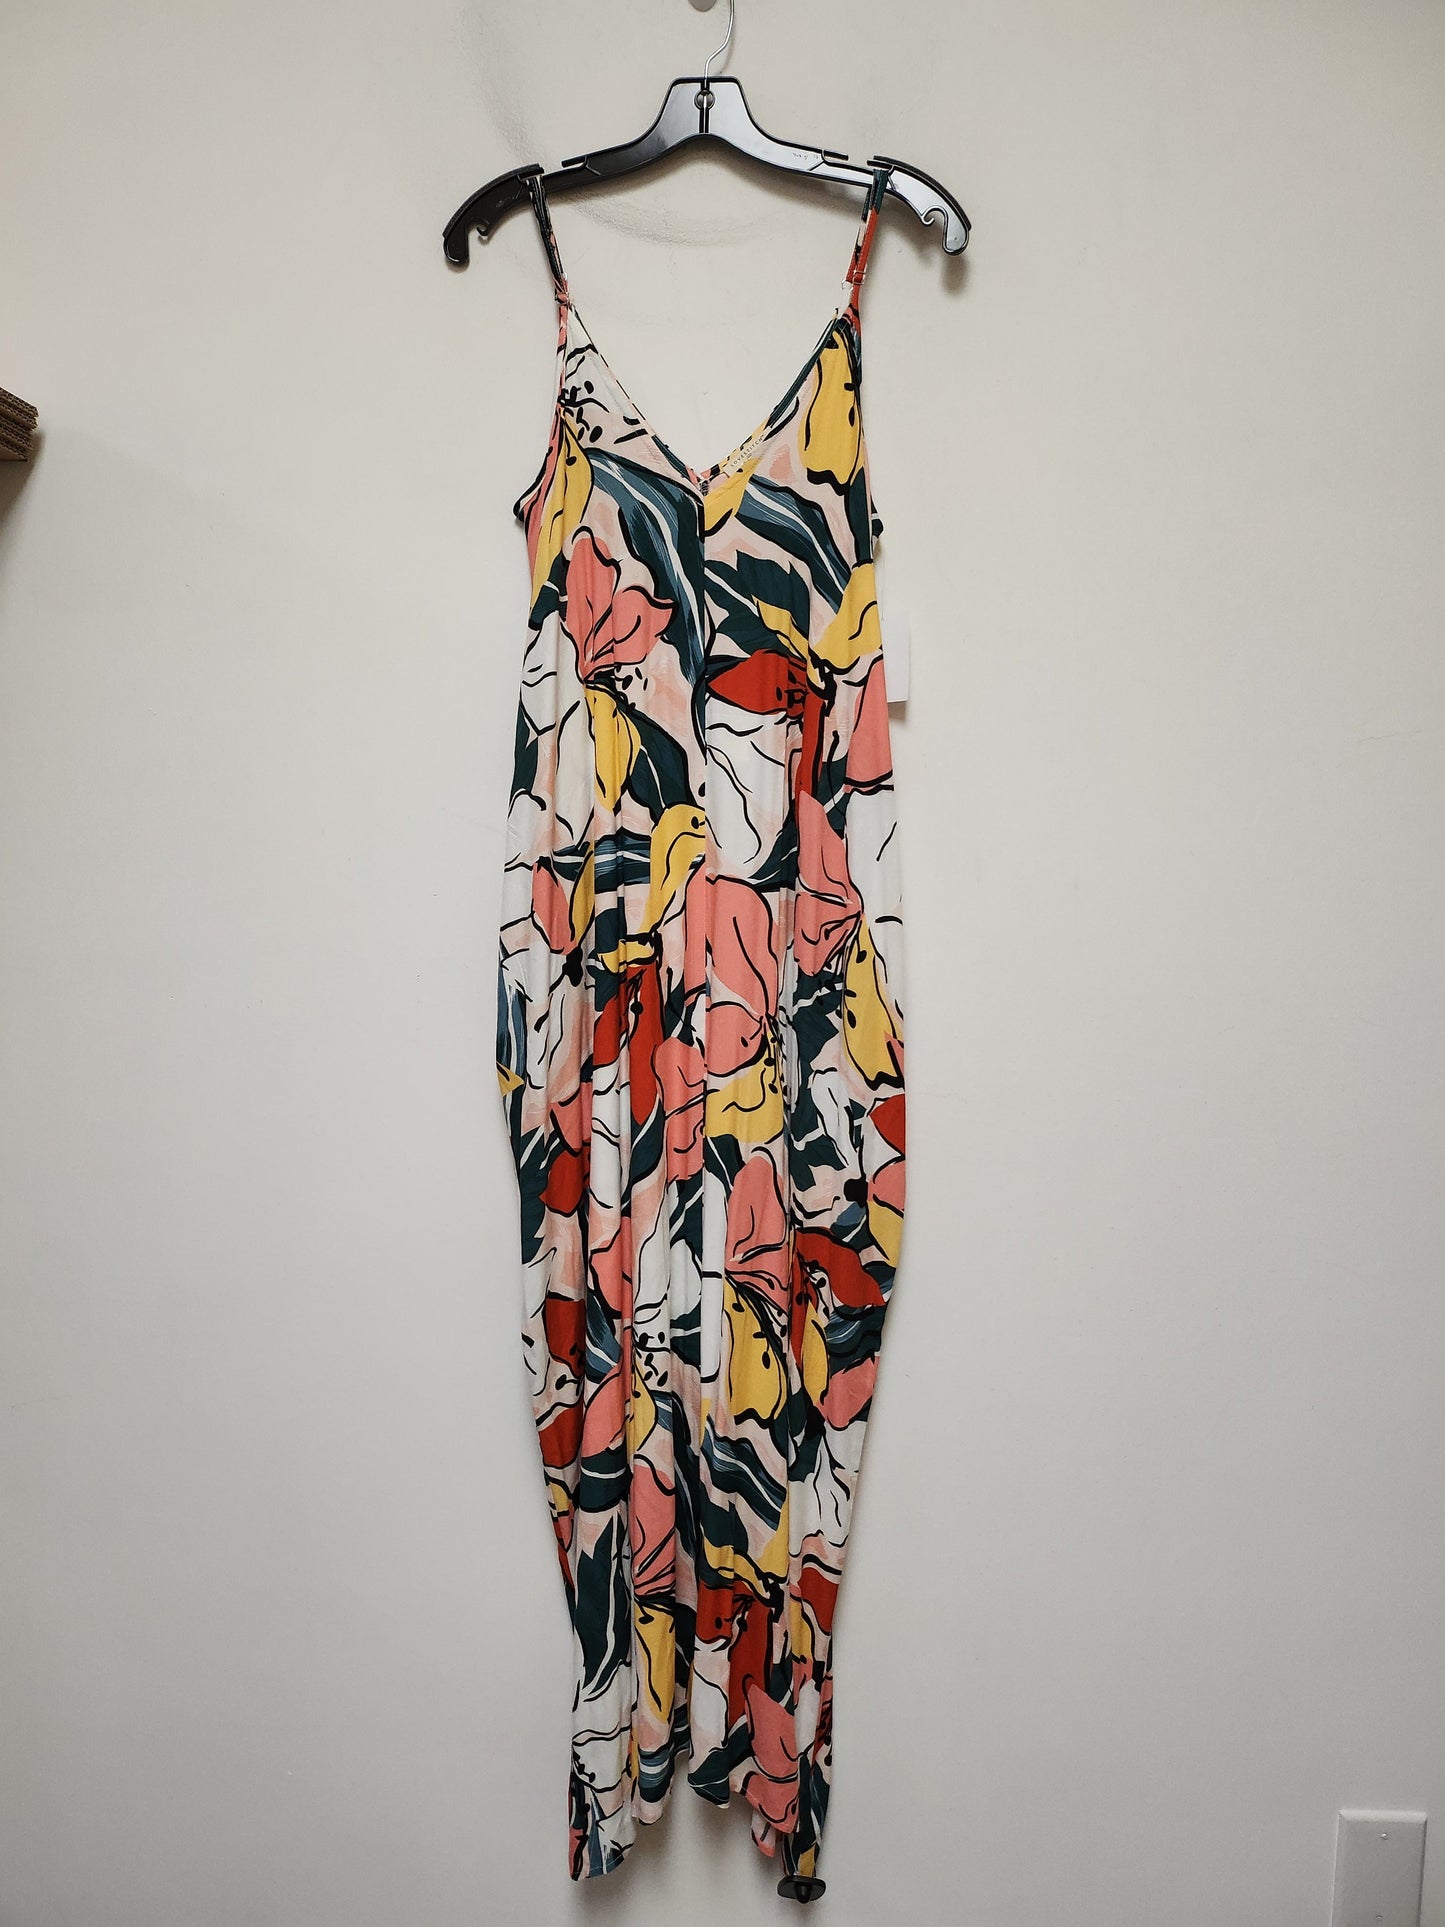 Multi-colored Dress Casual Maxi Lovestitch, Size S